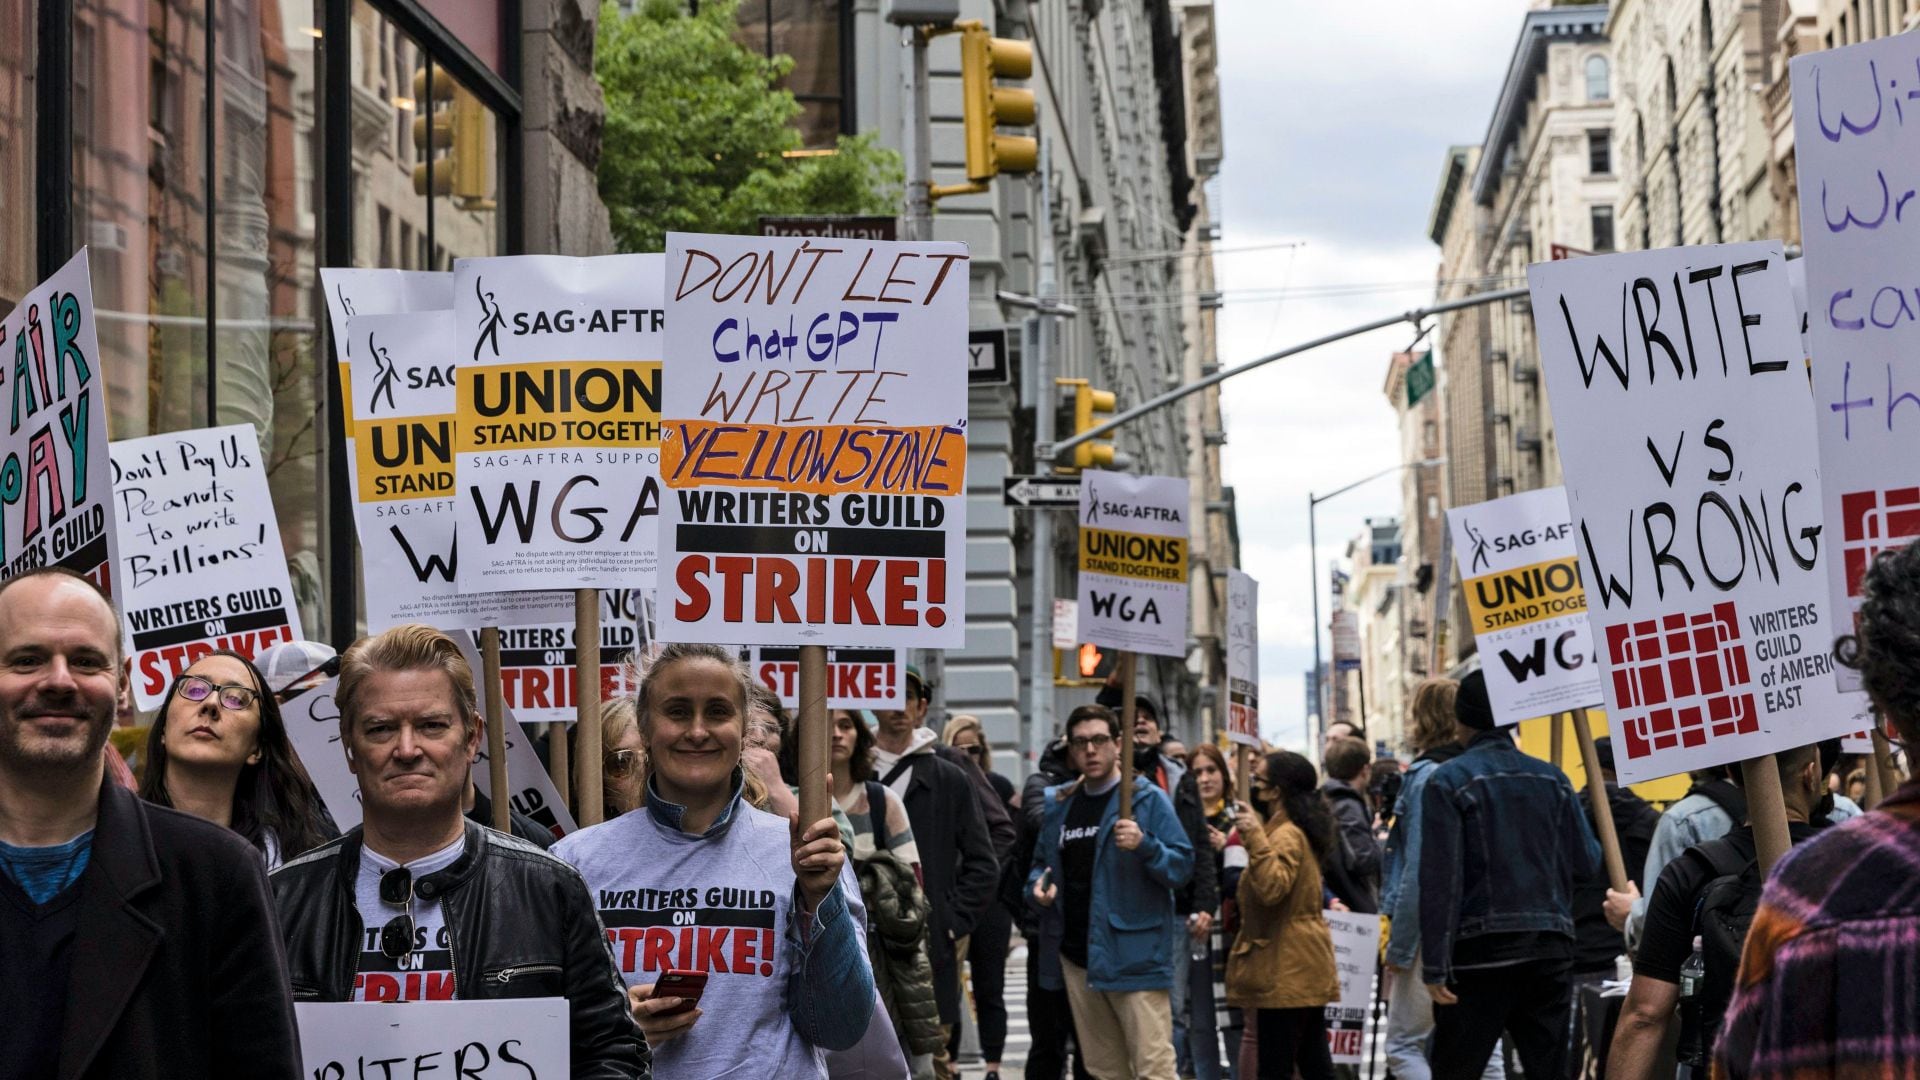 Guionistas aseguran que el acuerdo con los directores es un técnica para dividirlos y quitarle fuerza a la huelga
(Foto AP/Stefan Jeremiah)